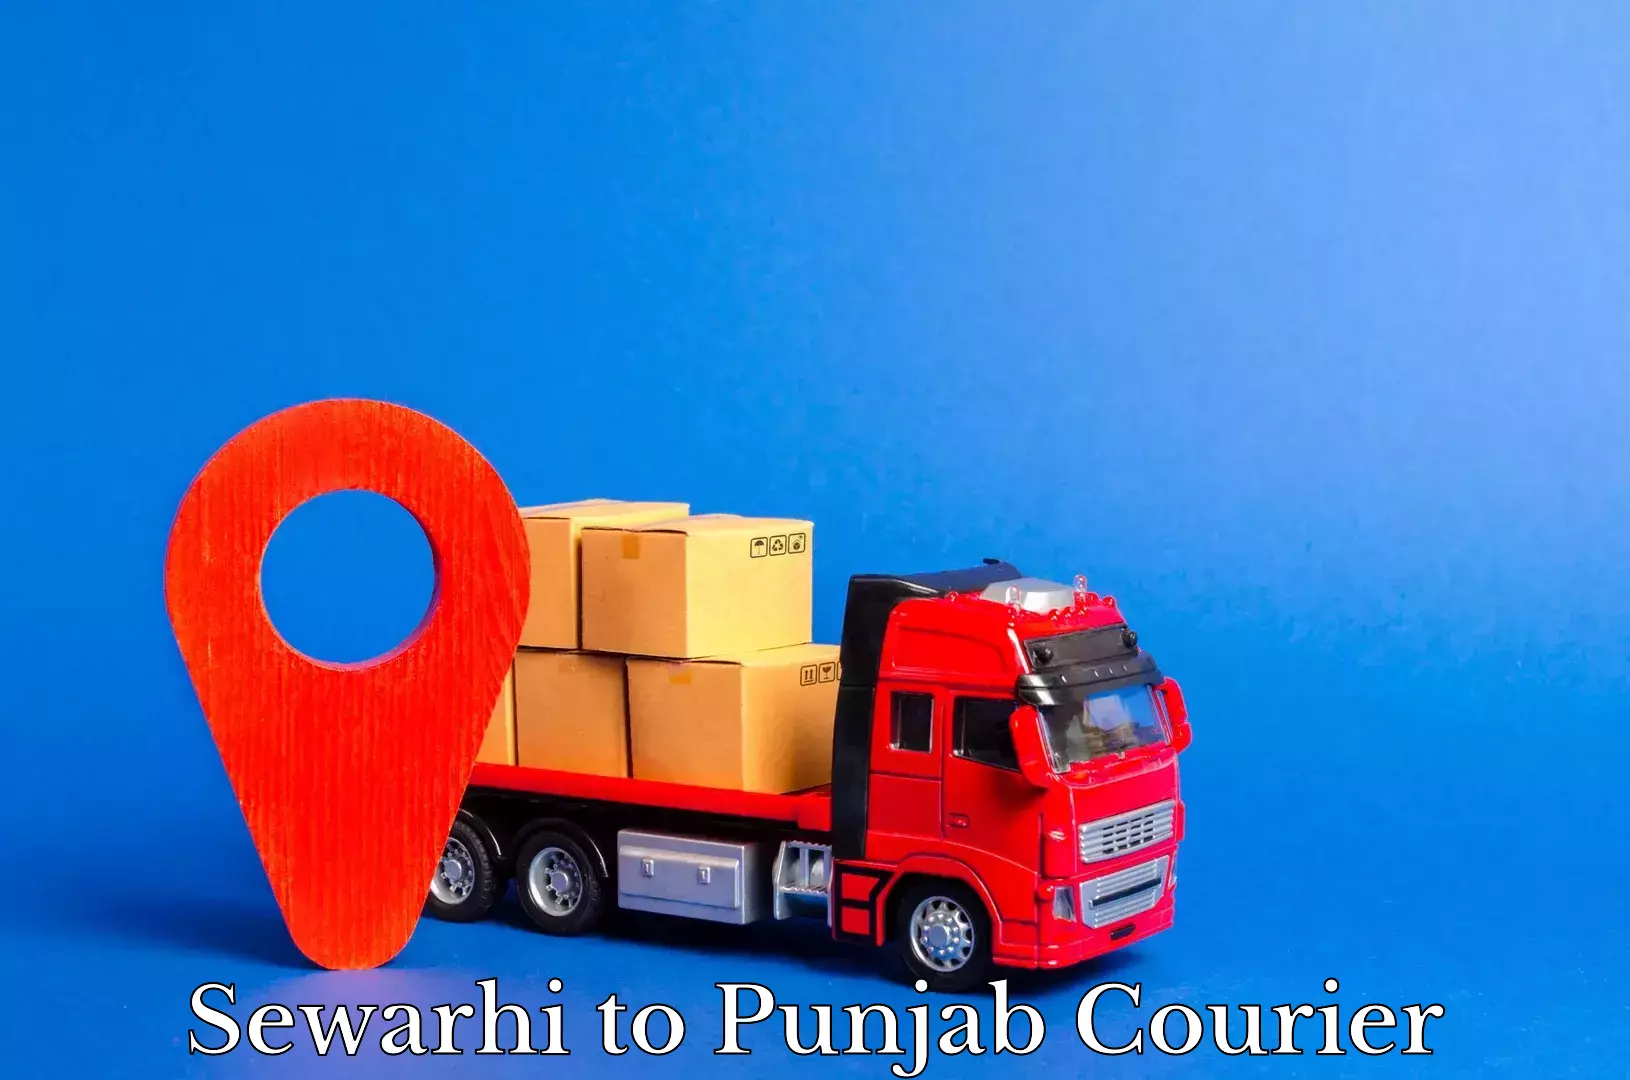 Large package courier Sewarhi to Punjab